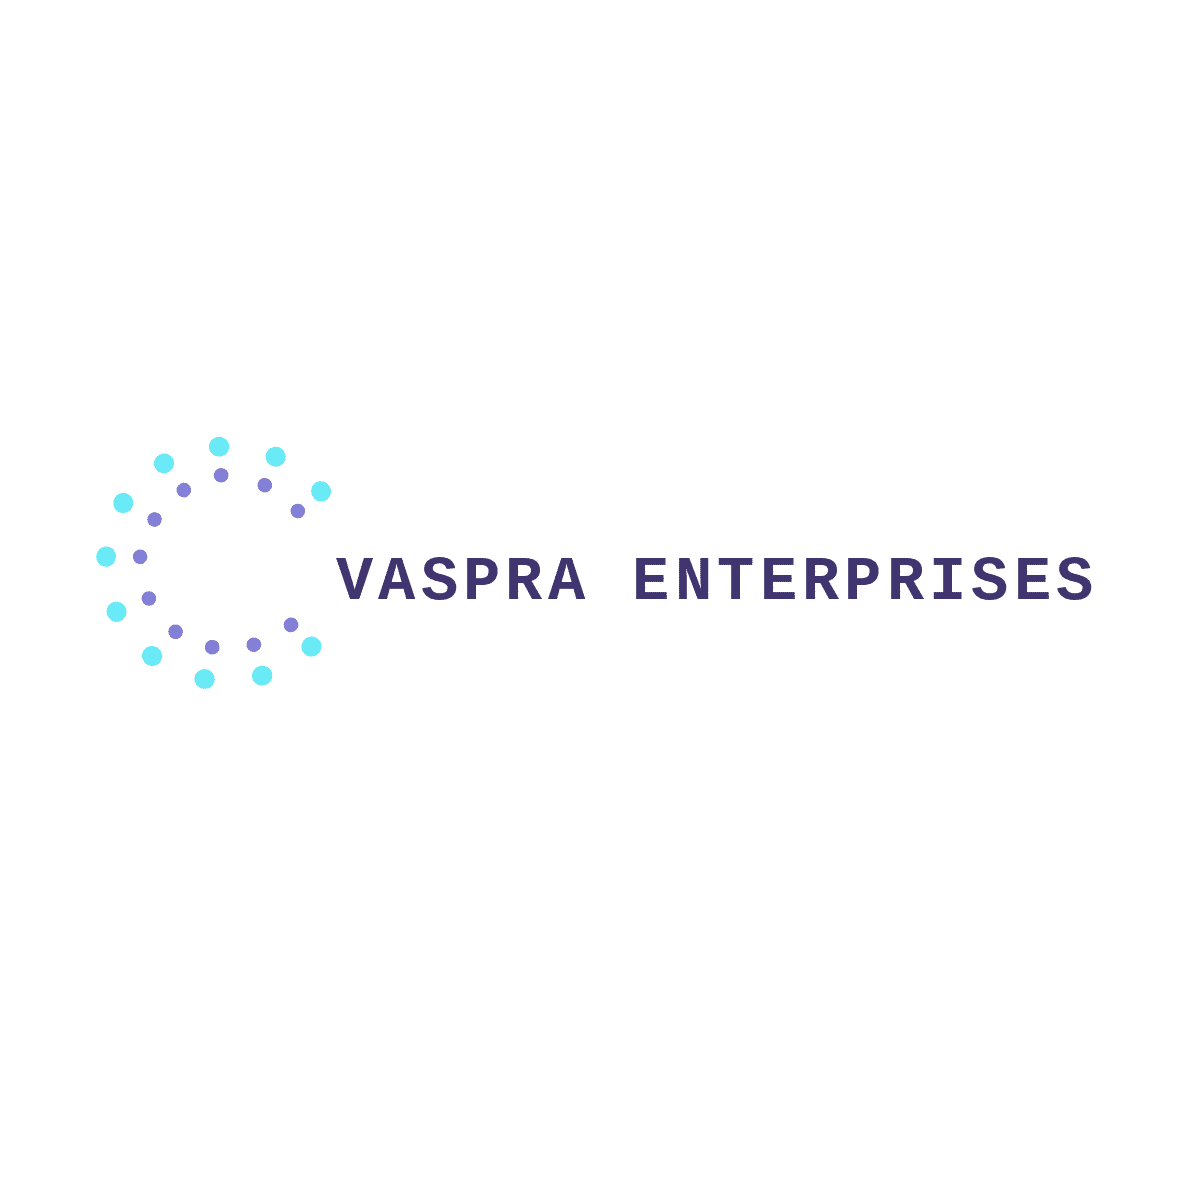 VASPRA ENTERPRISES